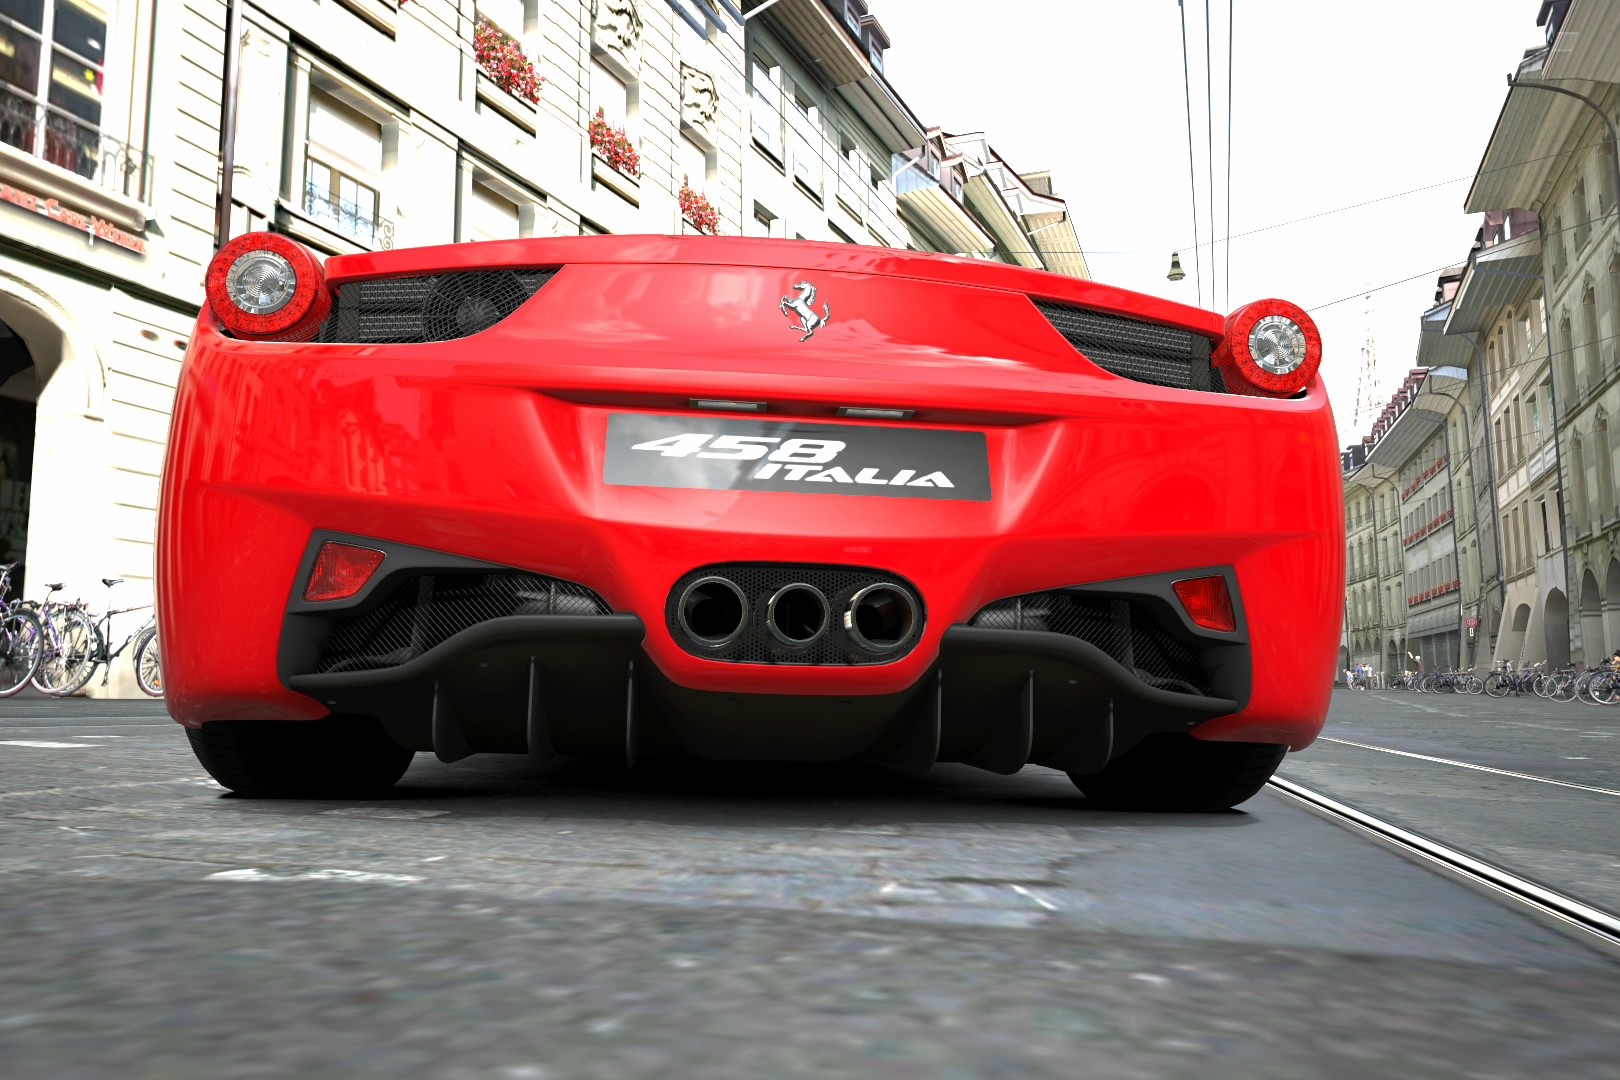 General 1620x1080 car Ferrari 458 Gran Turismo 5 video games vehicle red cars Ferrari